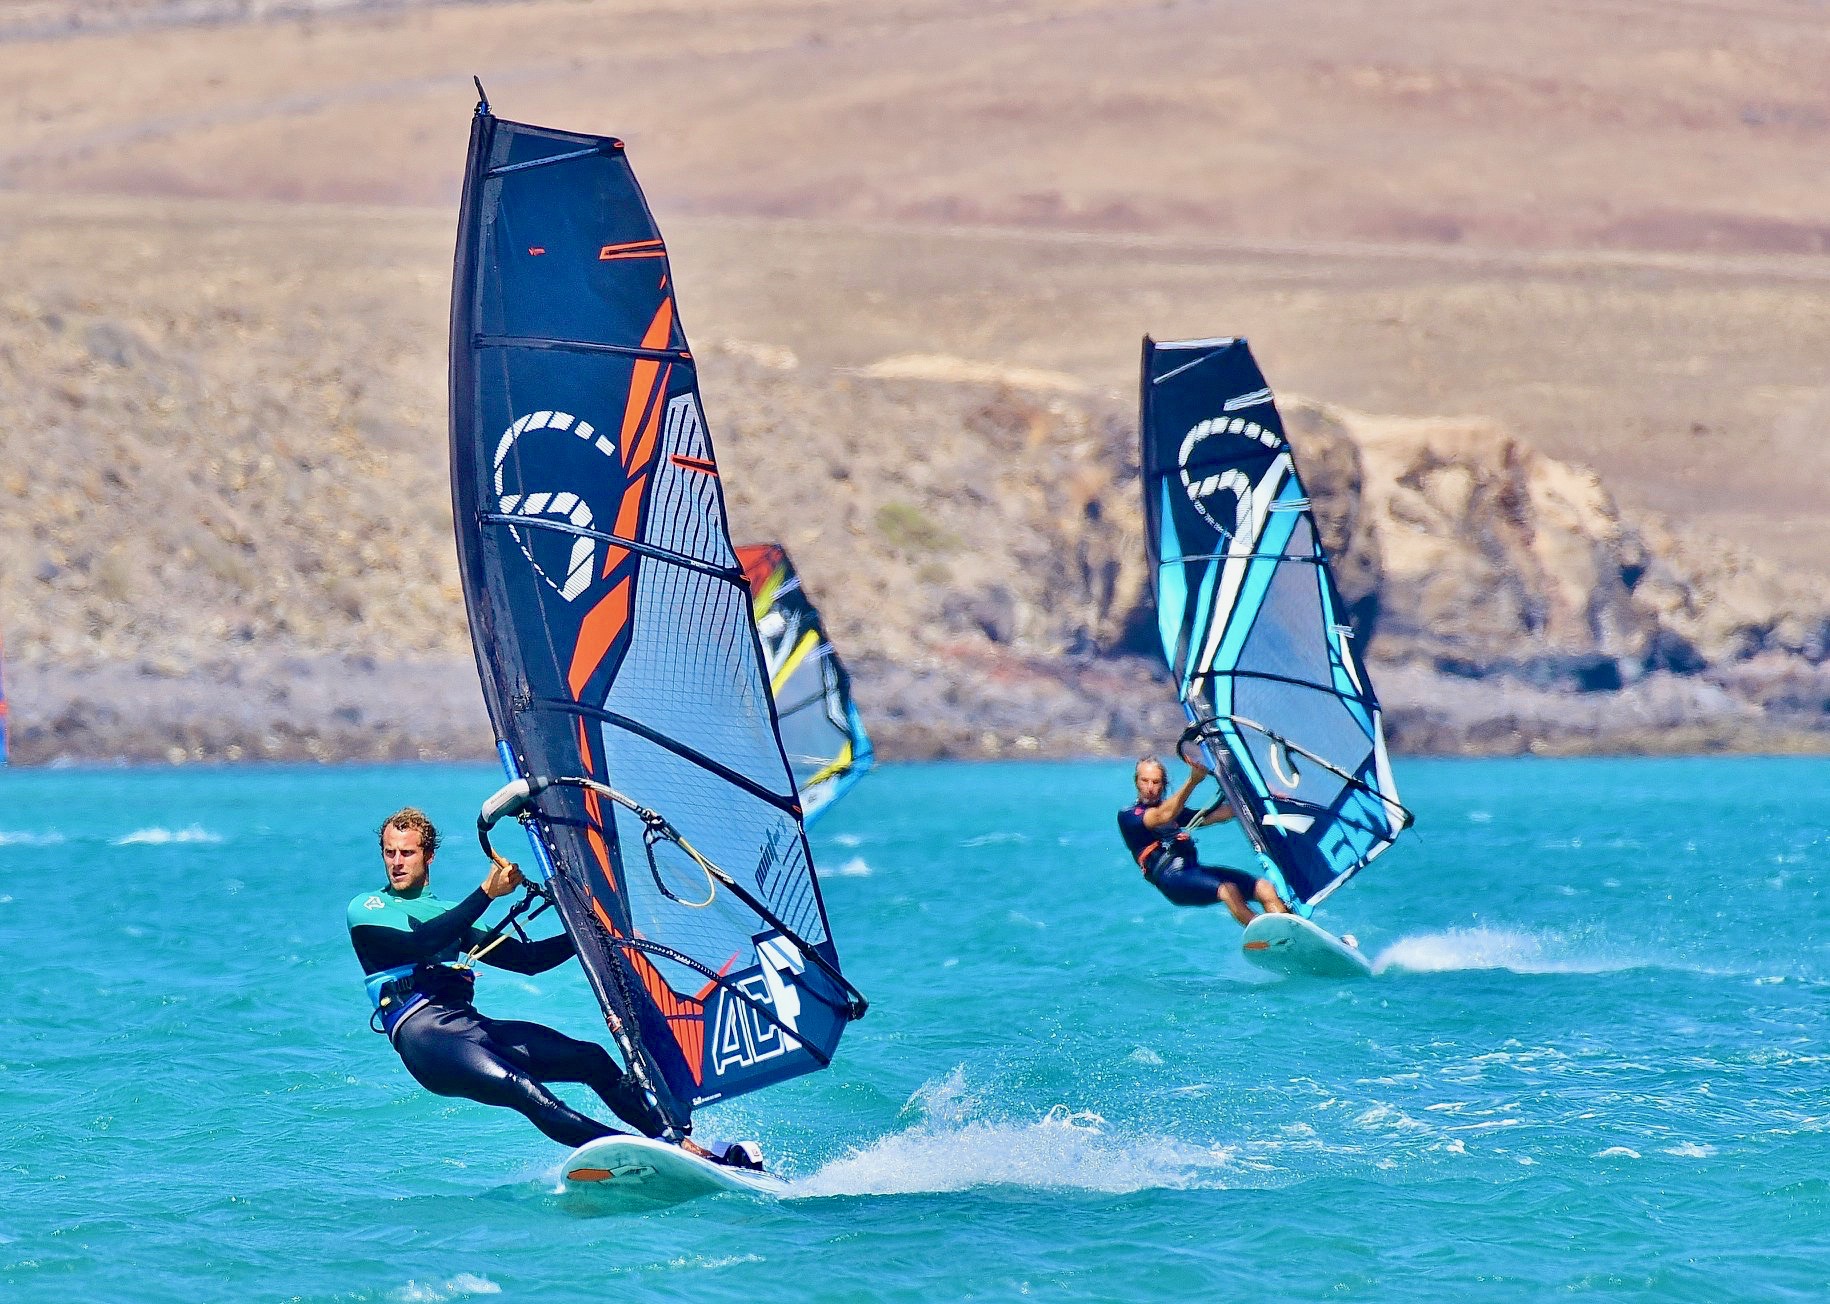 Dos windsurfistas practicando sus habilidades de windsurf en aguas turquesas